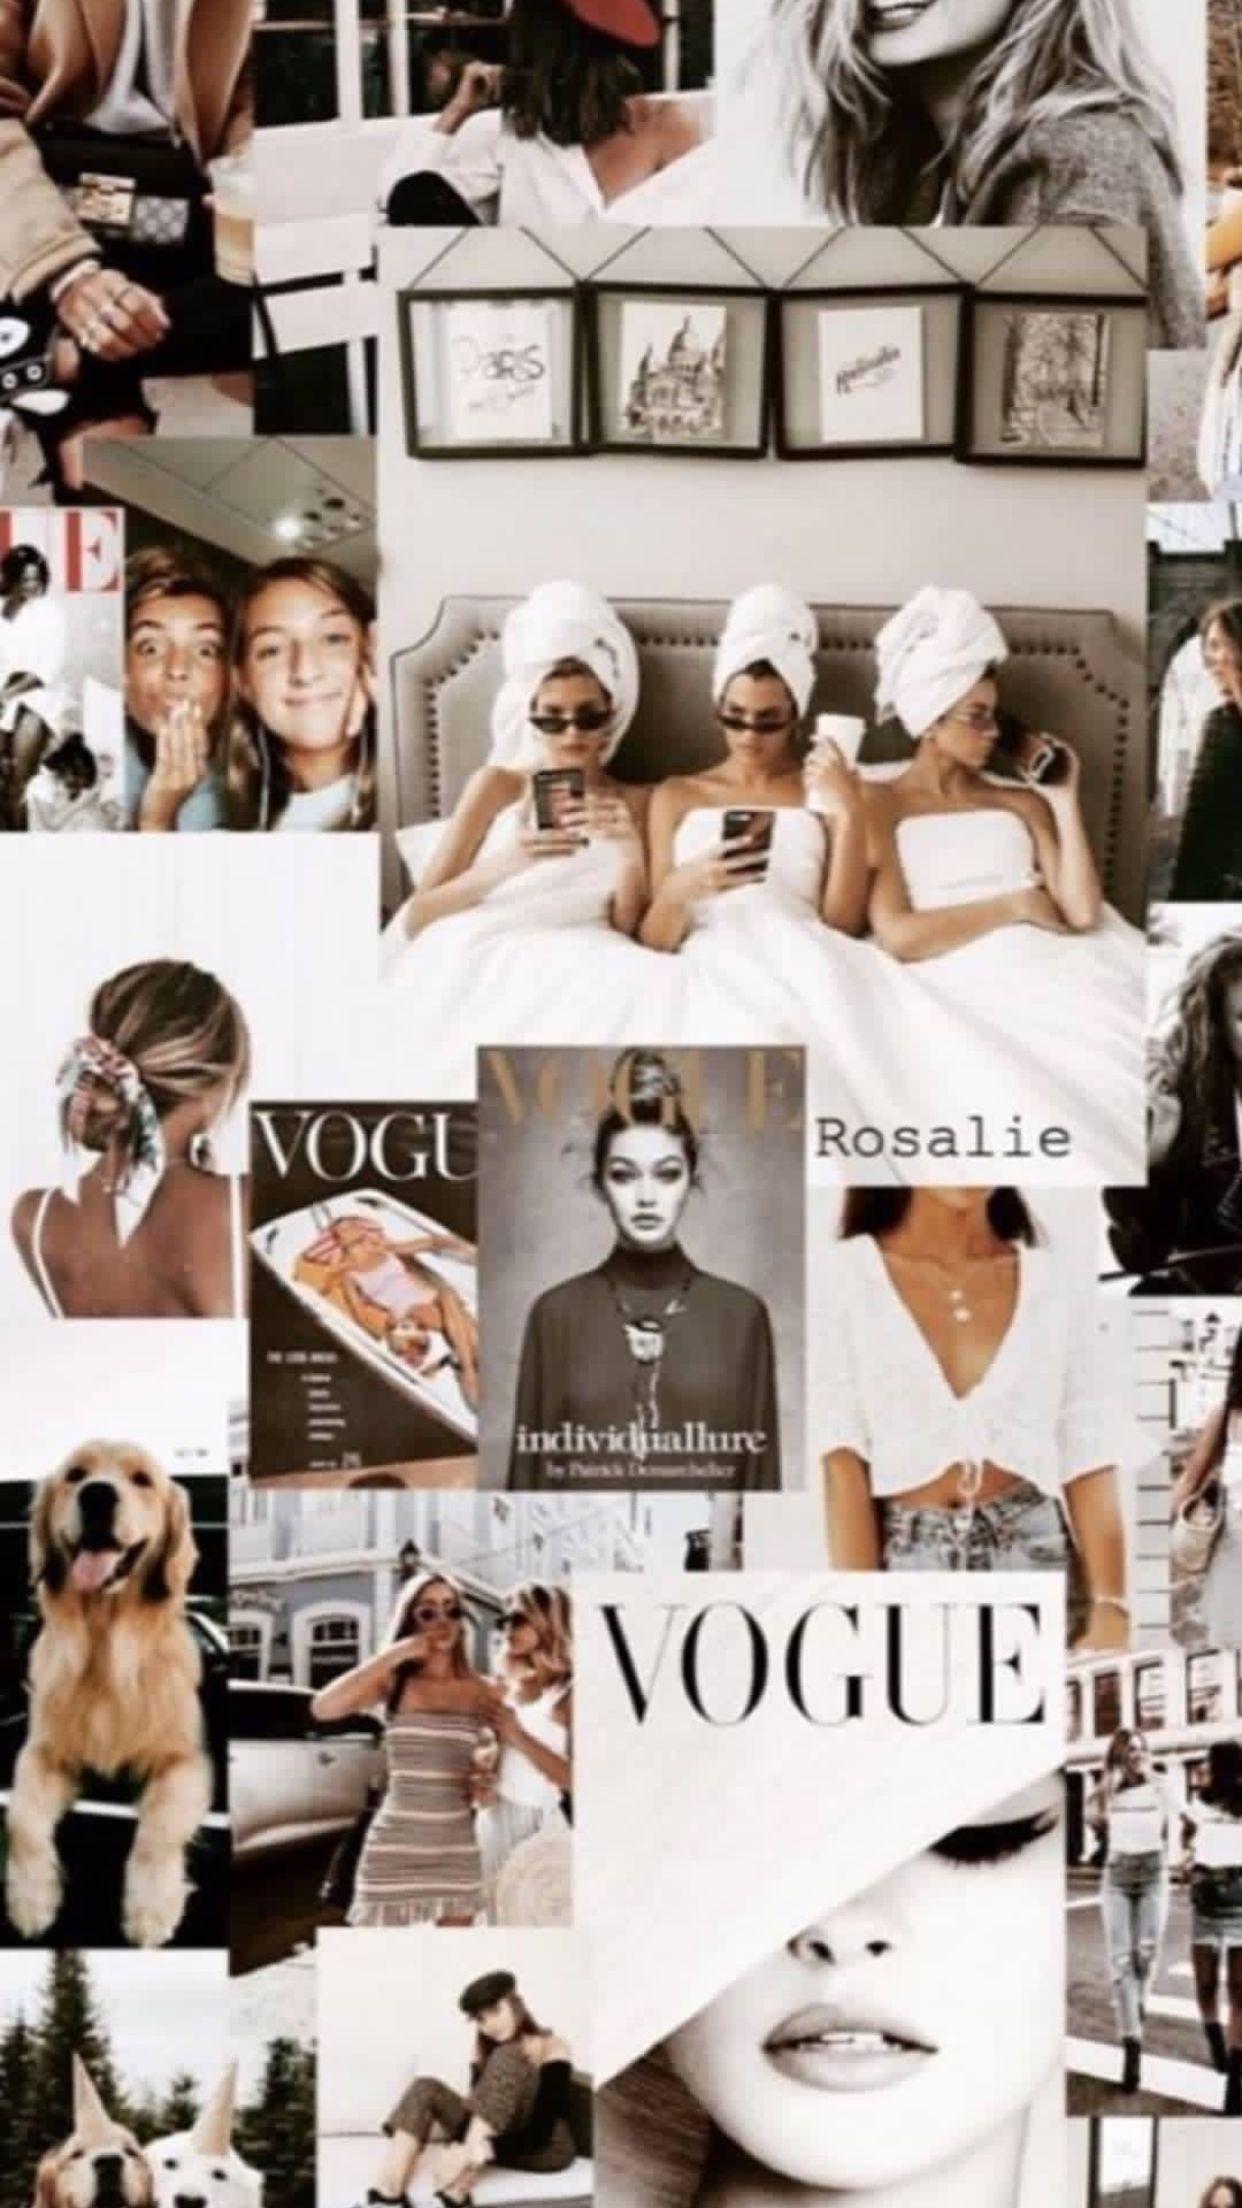 Vogue Wallpaper  Planos de fundo Fundo pra foto Fundo para fotos